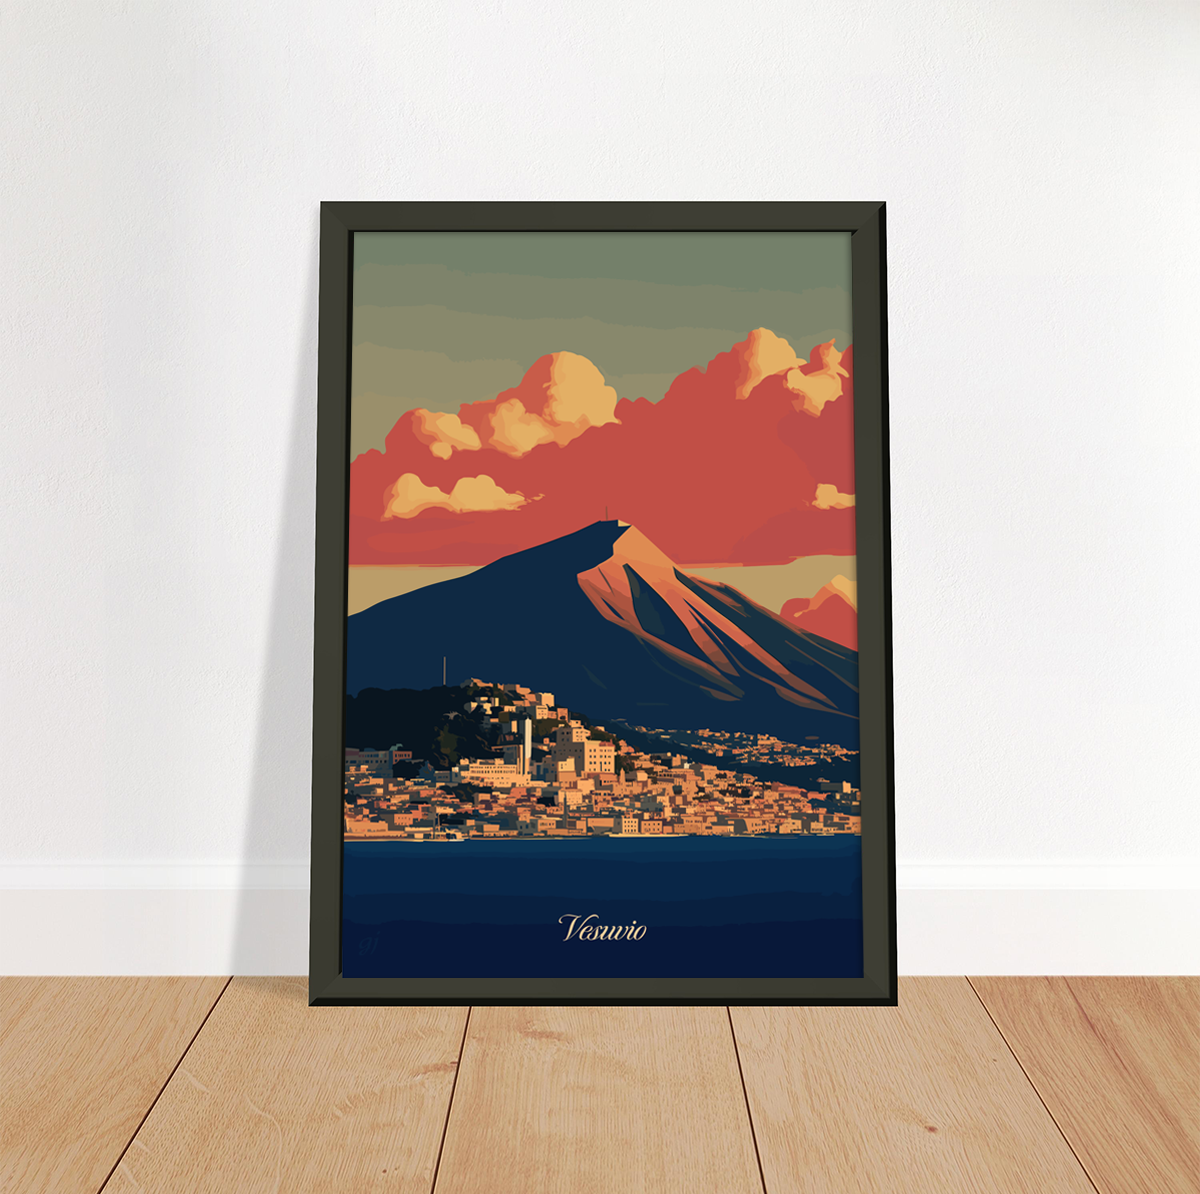 Vesuvio poster by bon voyage design